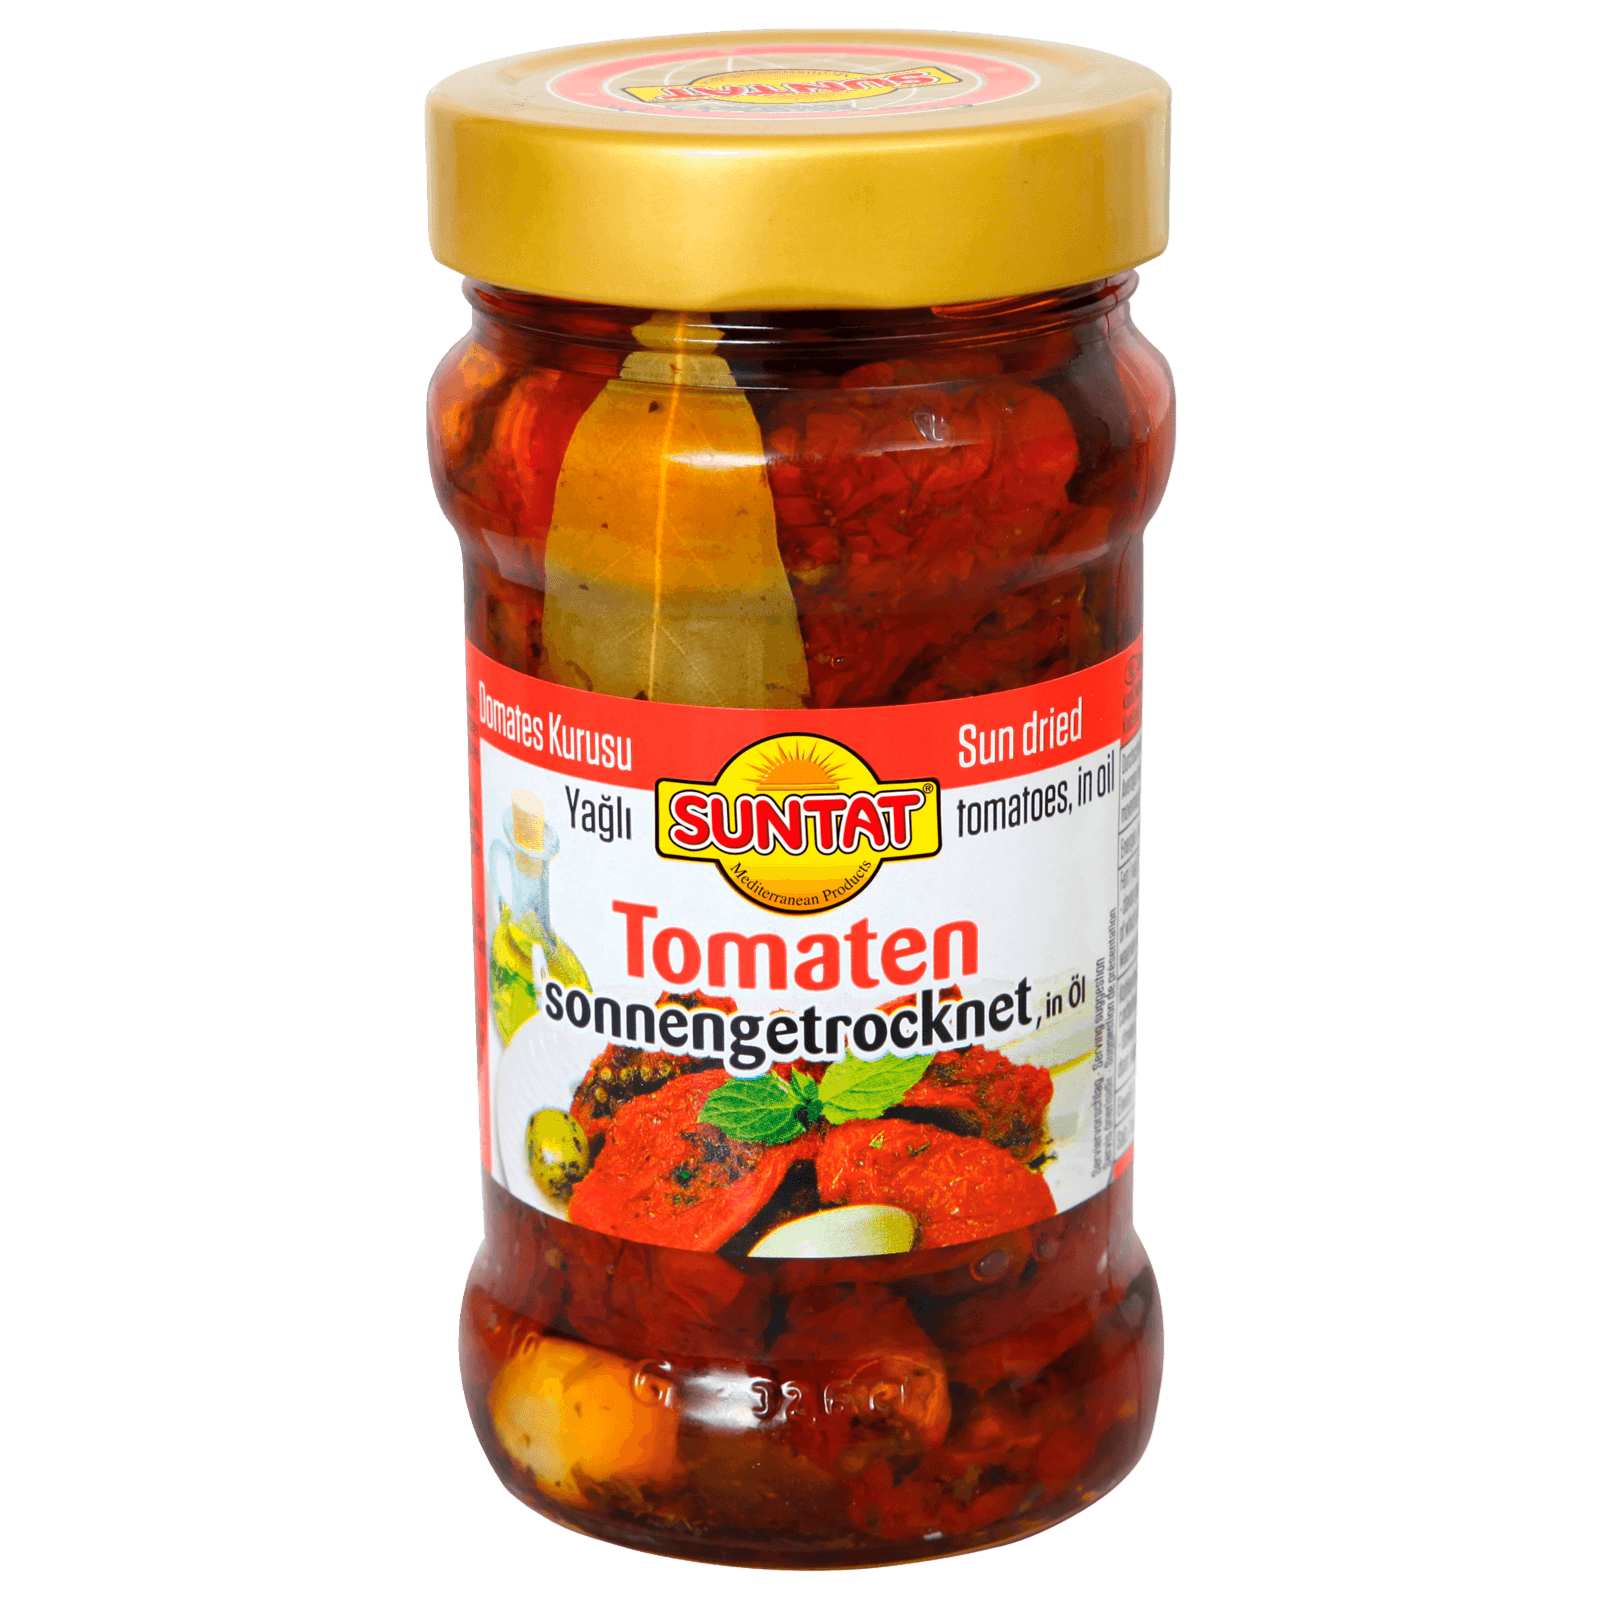 Suntat getrocknete Tomaten in Öl 310g bei REWE online bestellen!